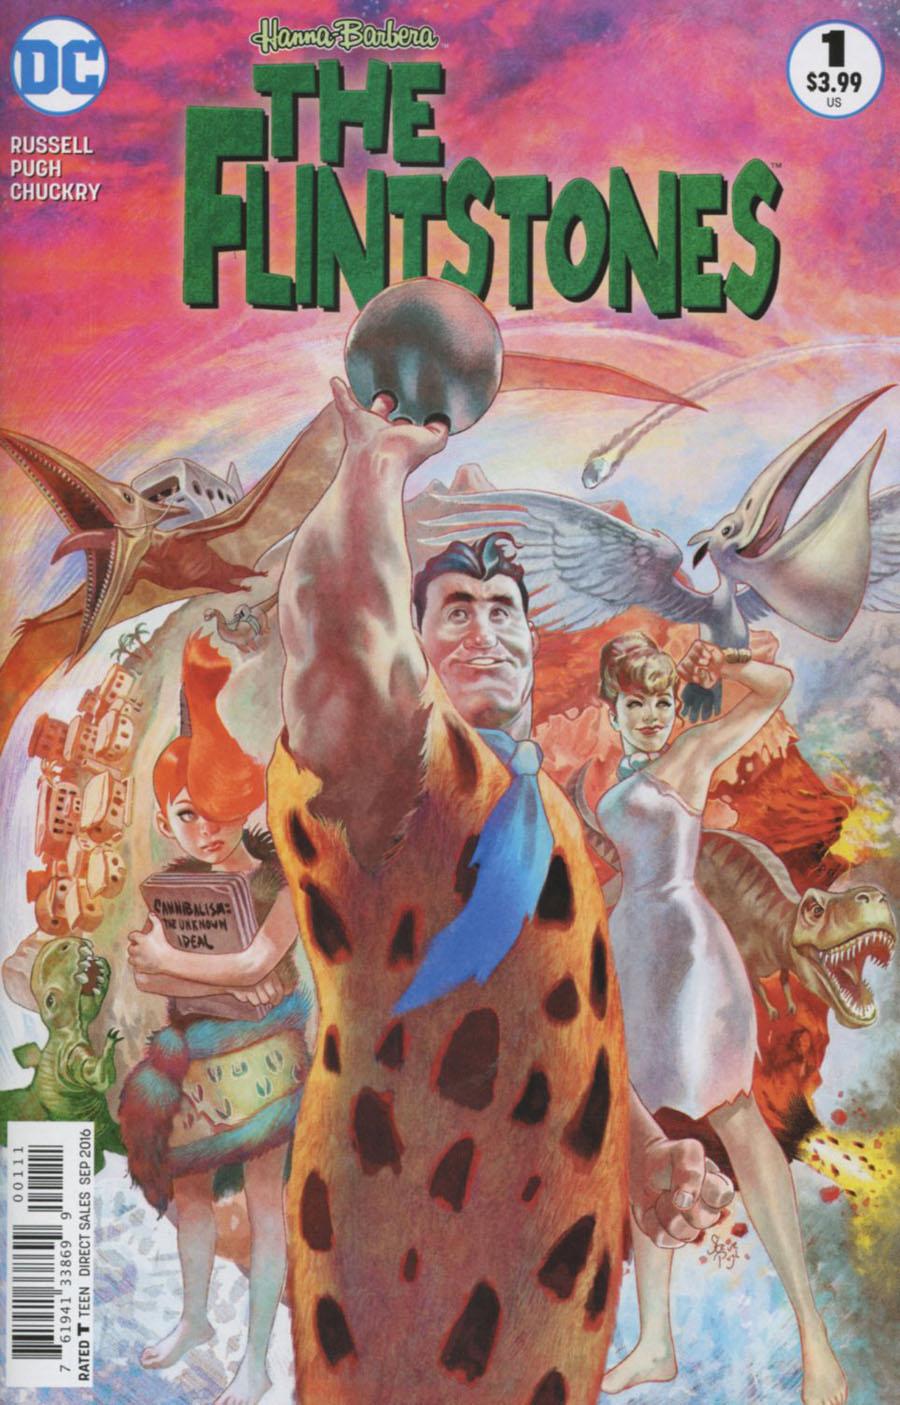 Flintstones (DC) Vol. 1 #1